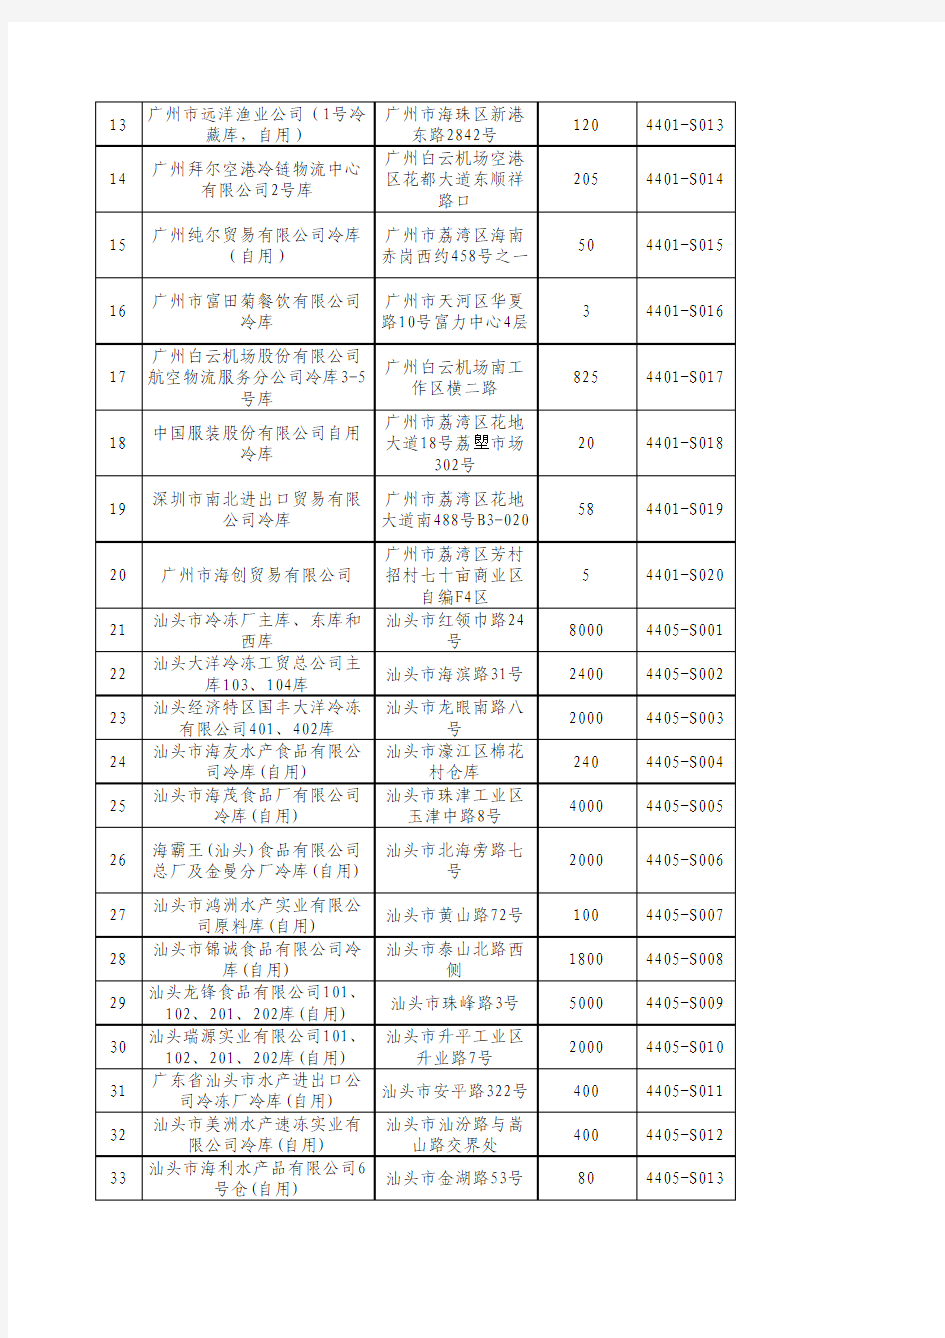 《广东局辖区进境水产品认可口岸和配套存储库名单》(参考材料五)_2